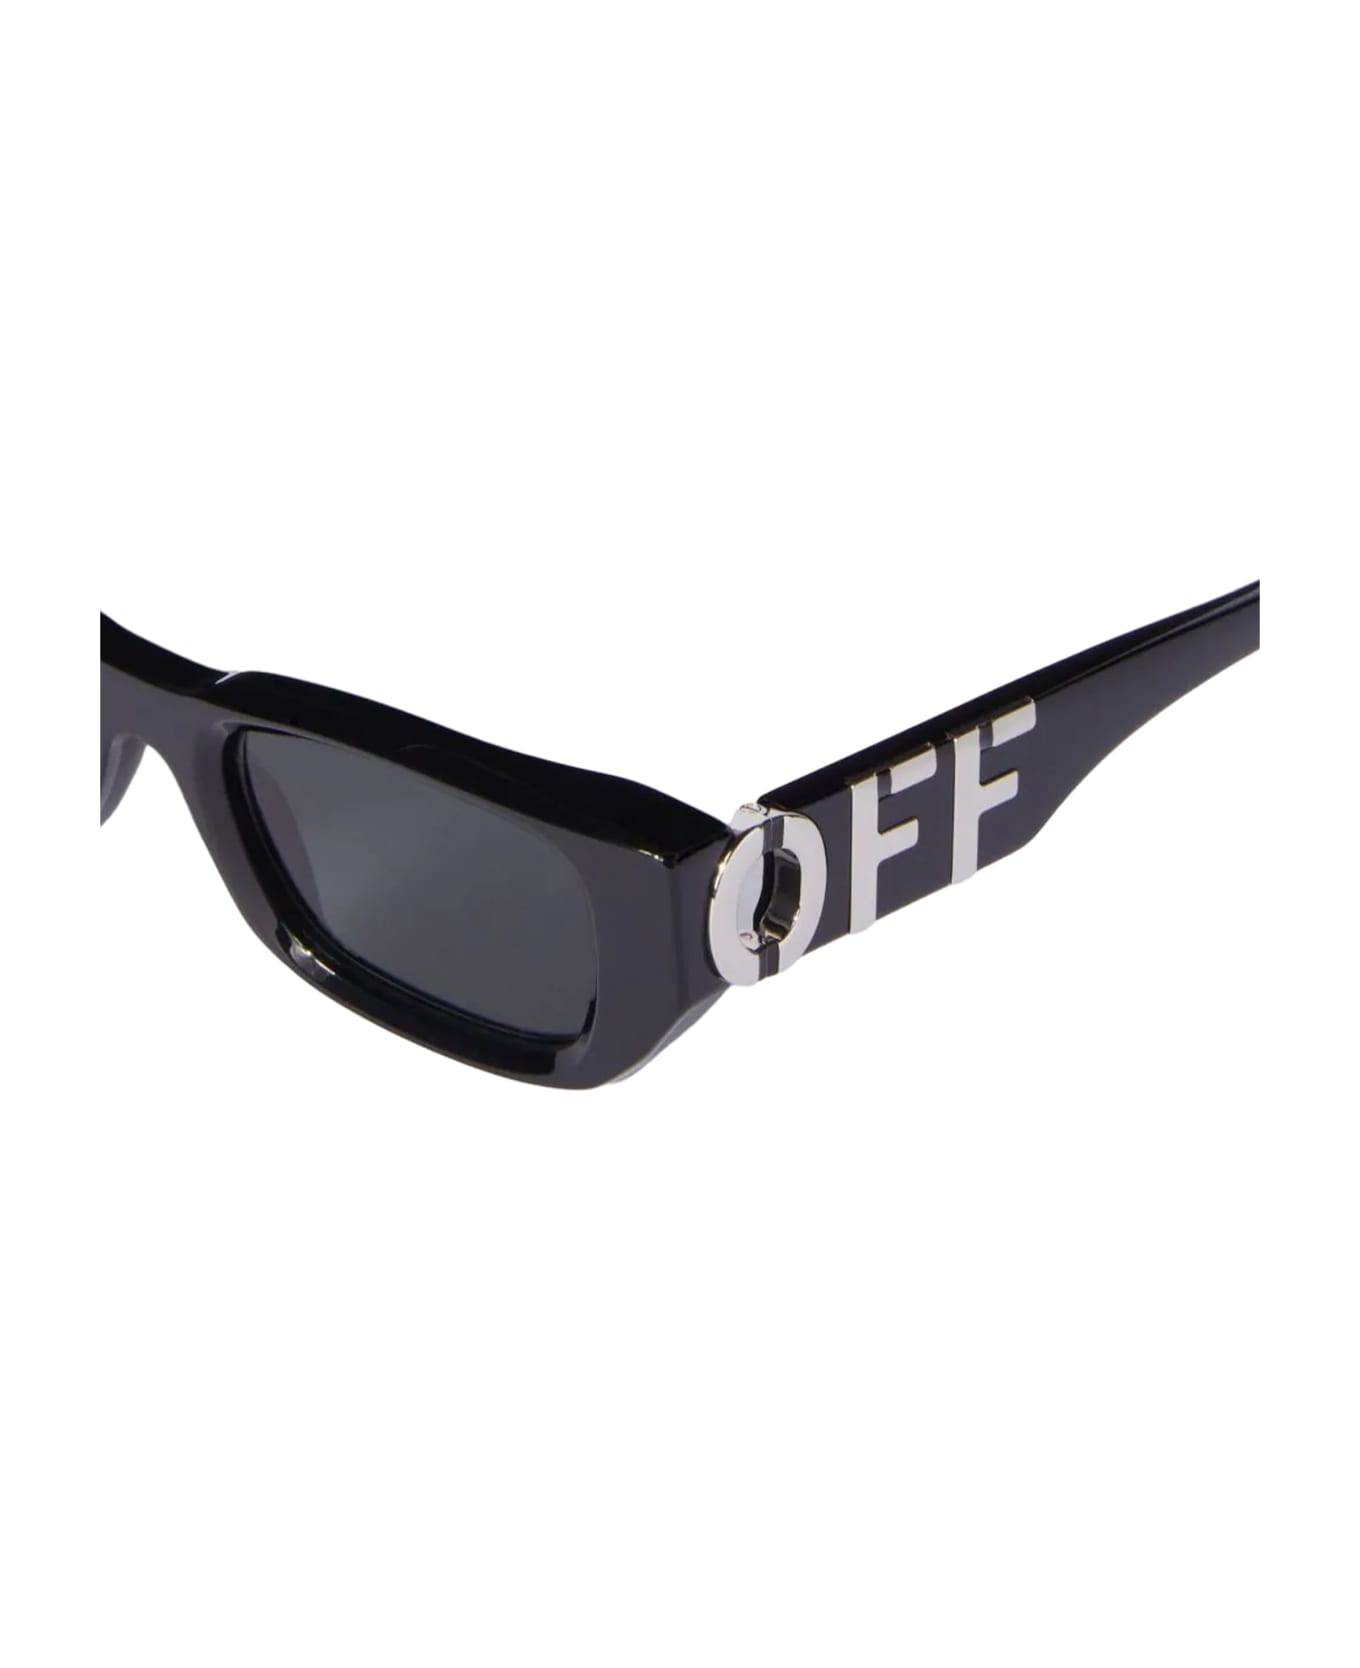 Off-White Fillmore - Black / Dark Grey Sunglasses - Black